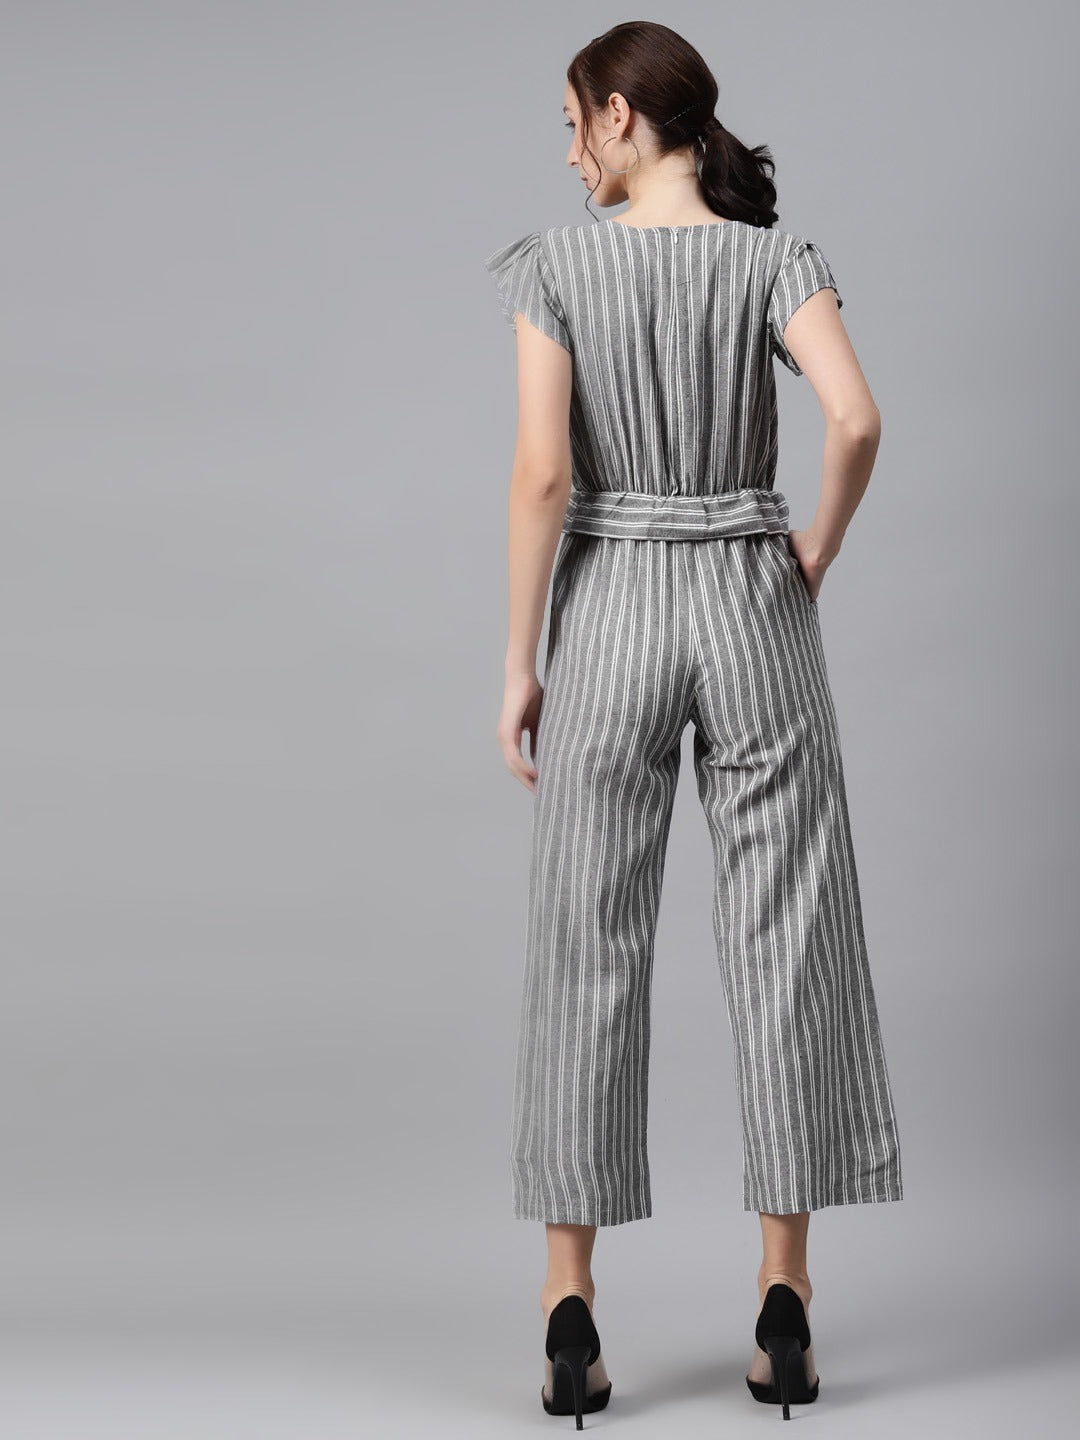 Cottinfab Charcoal Grey & White Striped Cotton Culotte Jumpsuit